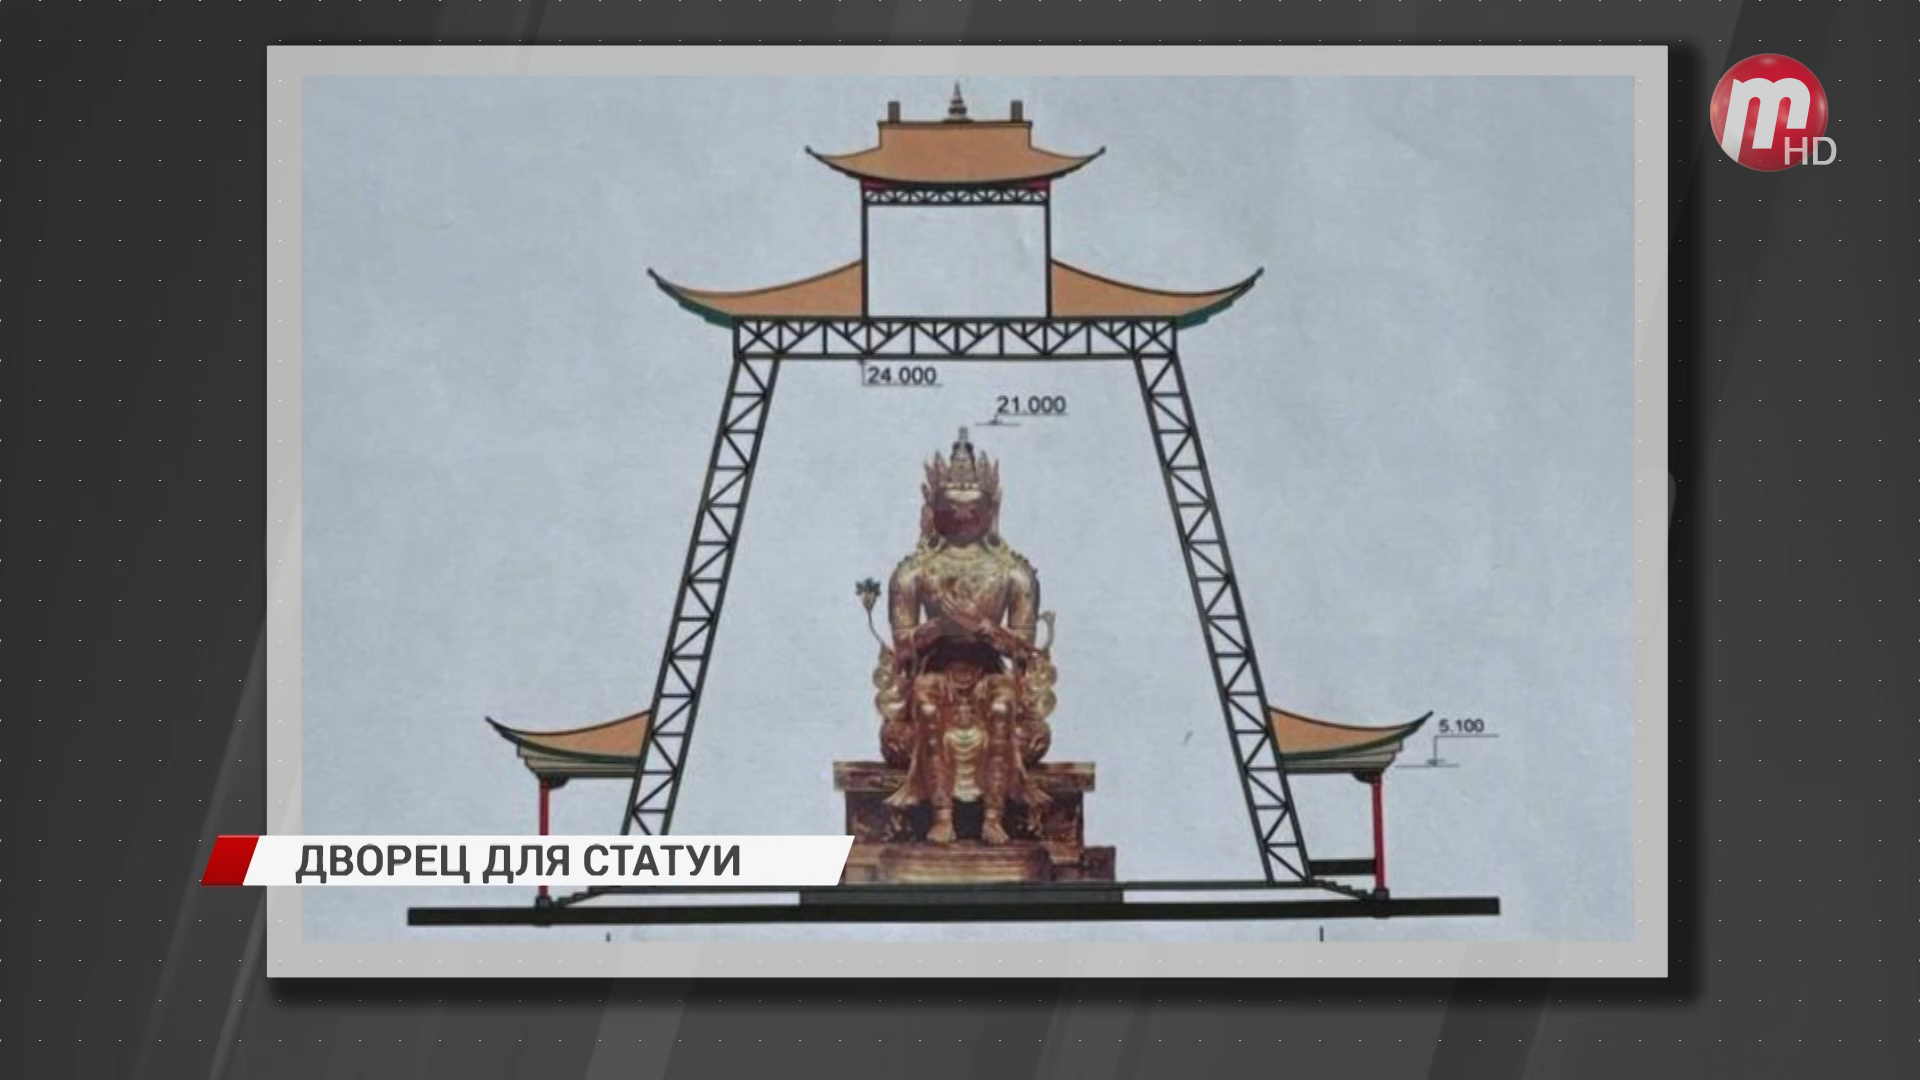 В Бурятии построят дворец для статуи Майдари